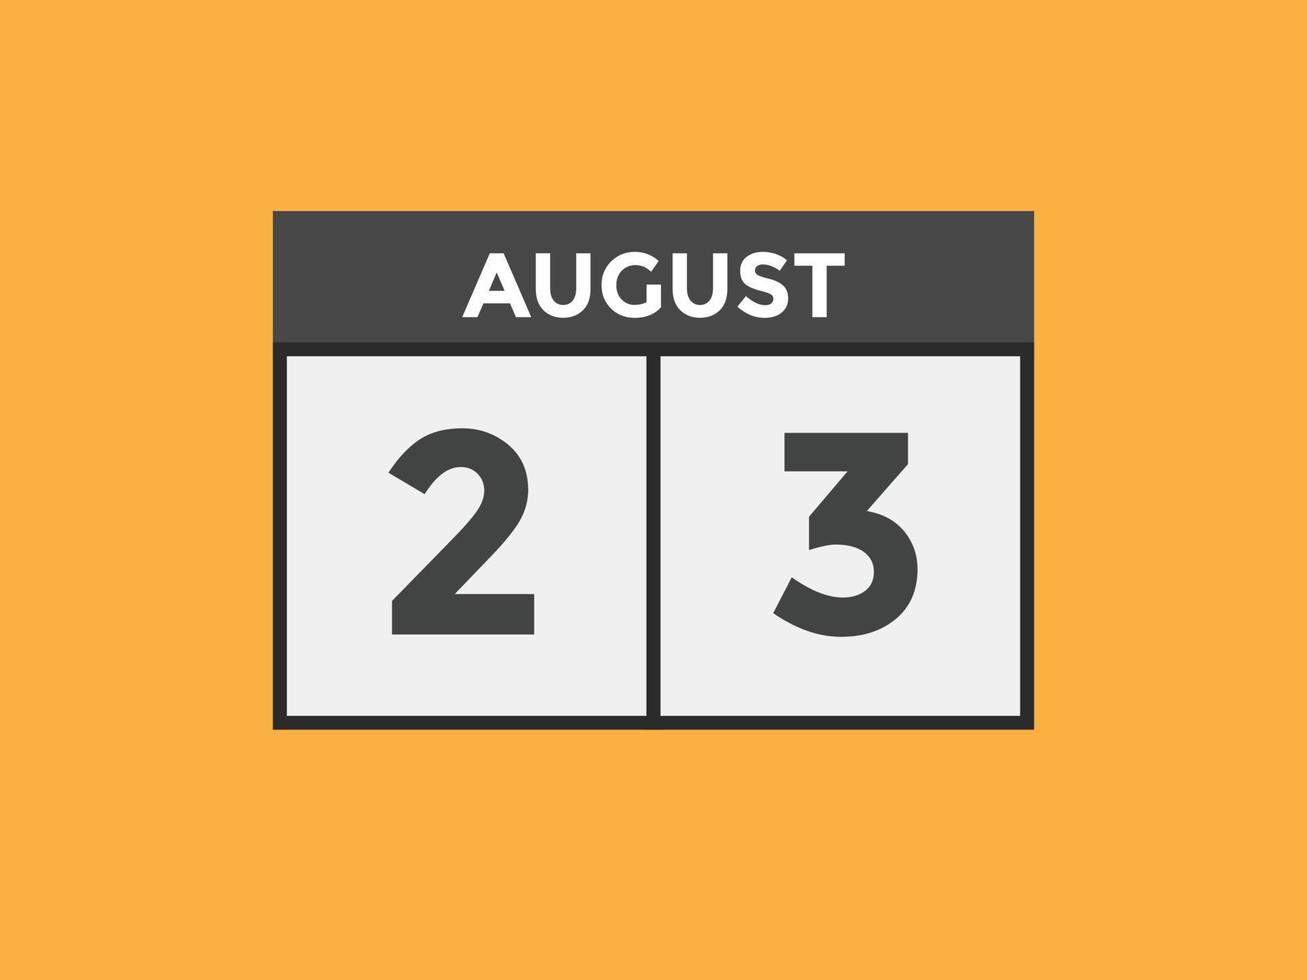 lembrete de calendário de 23 de agosto. Modelo de ícone de calendário diário de 23 de agosto. modelo de design de ícone de calendário 23 de agosto. ilustração vetorial vetor